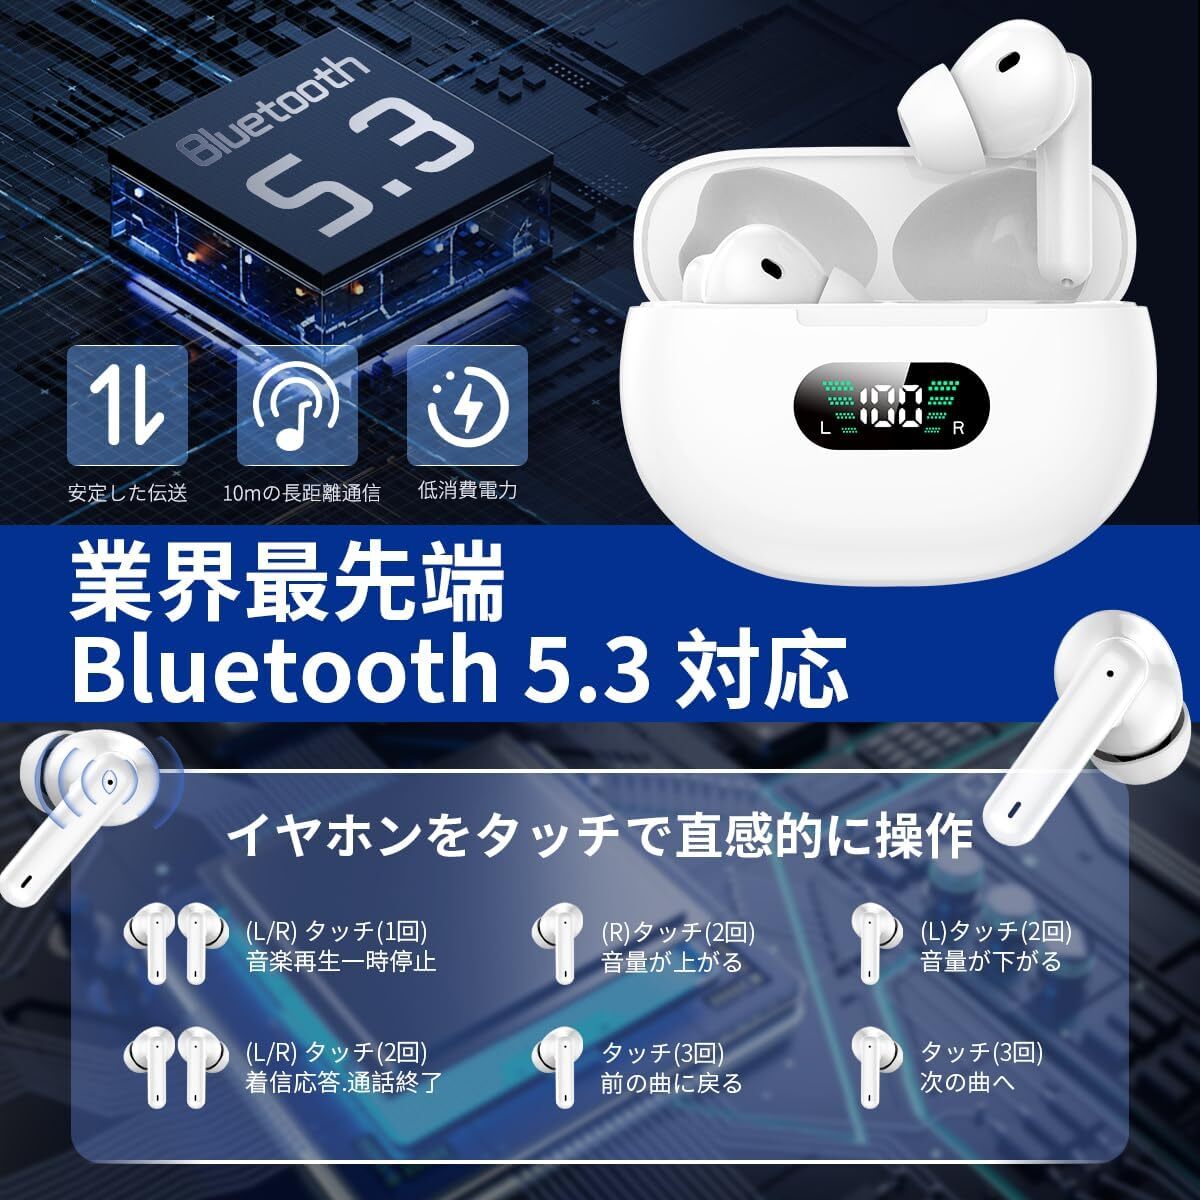 イヤホン Bluetooth イヤホン ワイヤレスイヤホン ブルートゥースイヤホン Bluetooth5.3+EDR搭載 カルナ型 自動ペアリング 瞬時接続